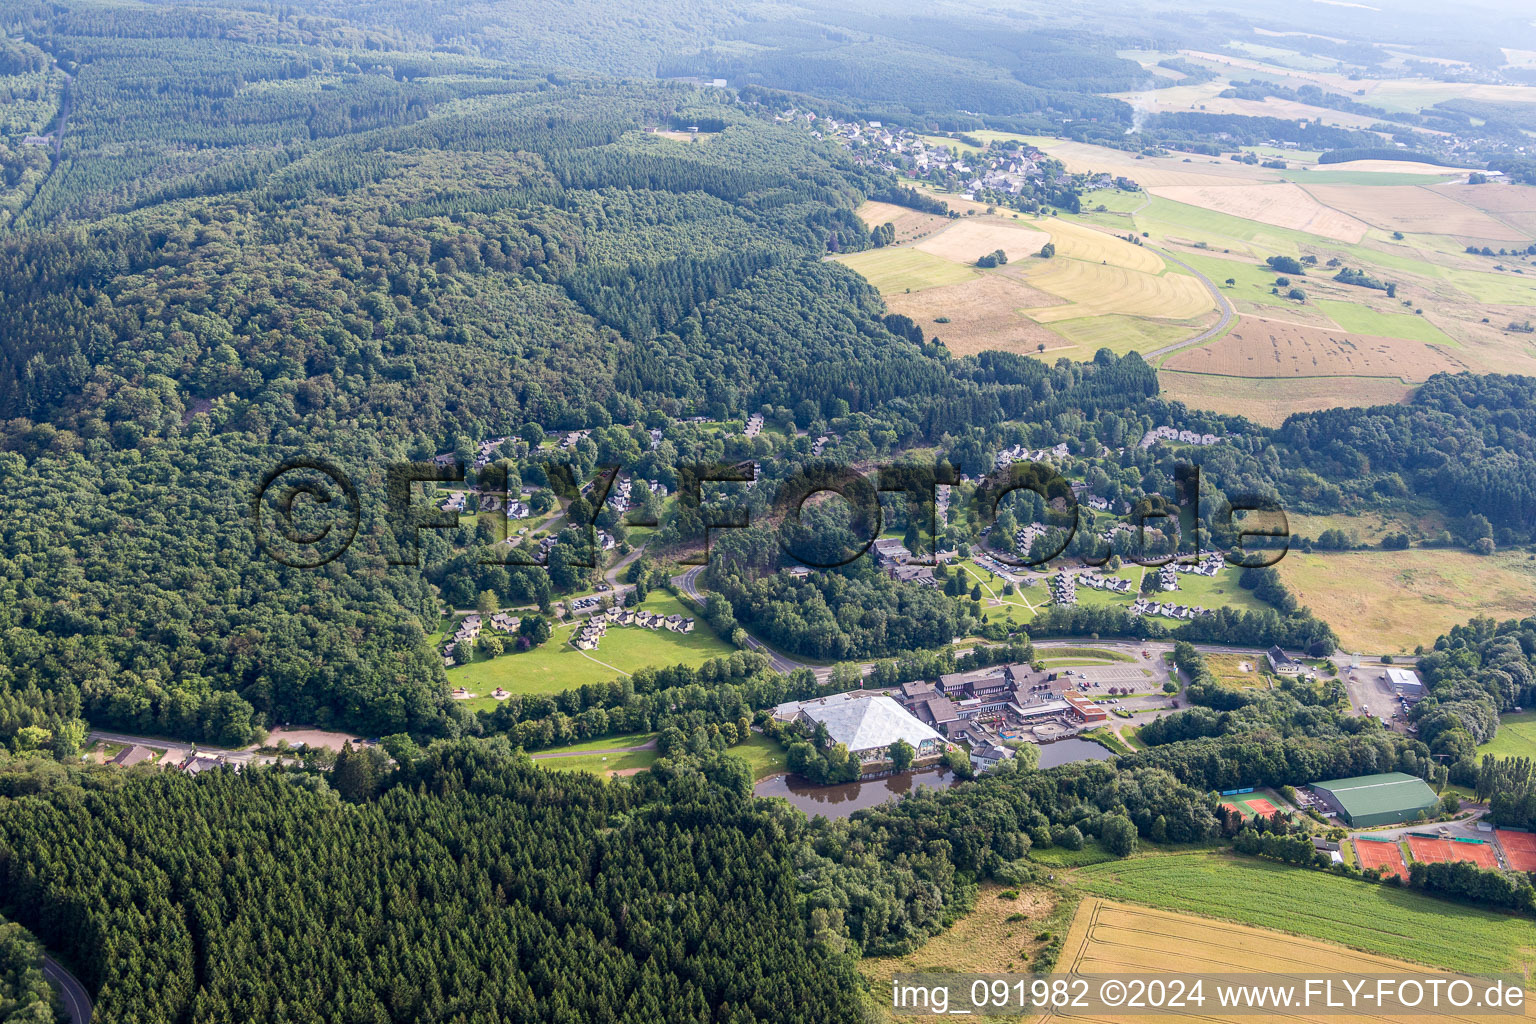 Ferienhaus- Anlage des Ferienparks Ferienpark Hambachtal in Oberhambach im Bundesland Rheinland-Pfalz, Deutschland